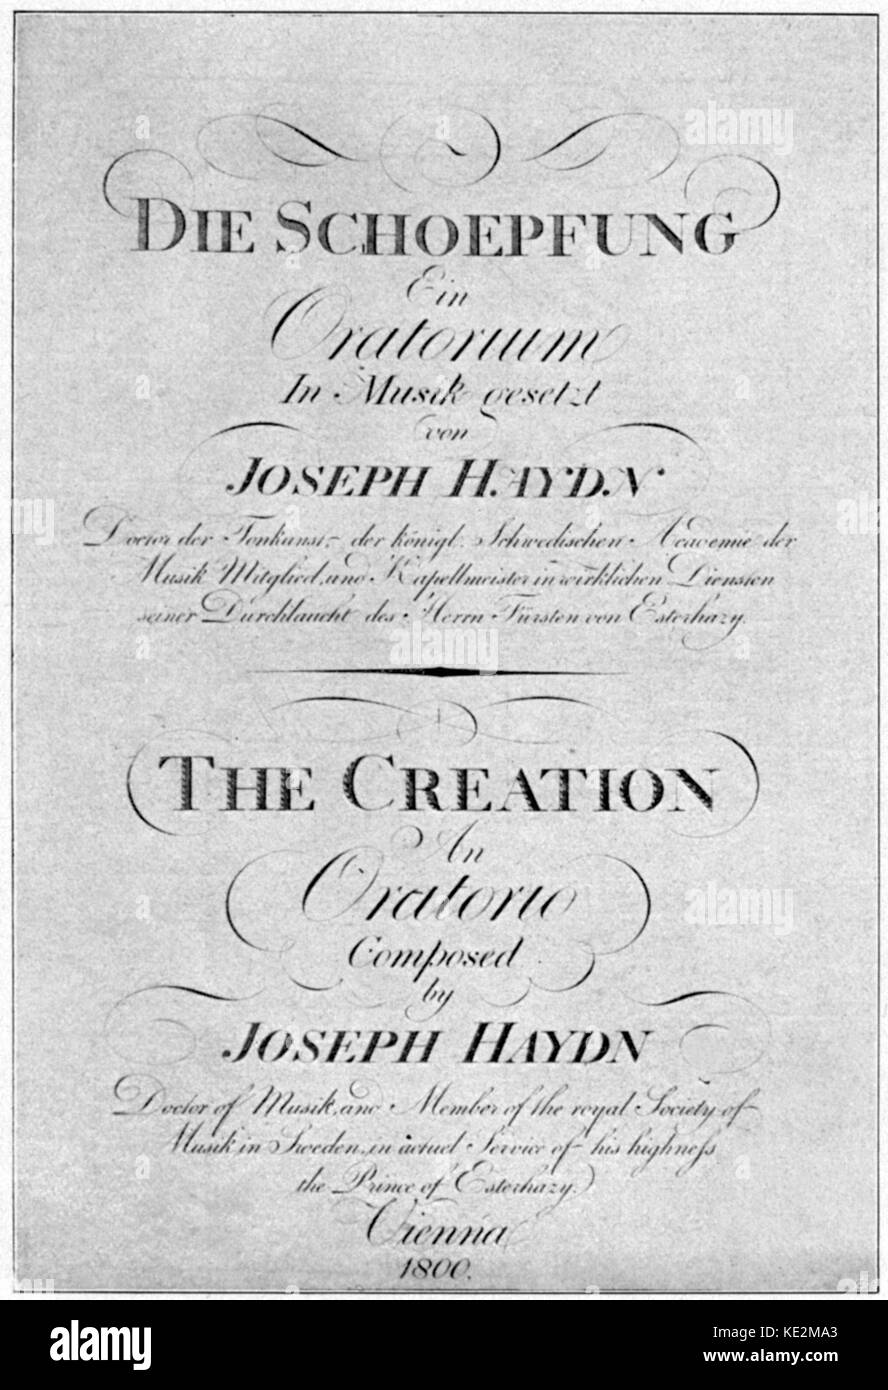 Franz Joseph Haydn - Titelseite von 'Die Schoepfung/der Schöpfung', 1800. Österreichischen Komponisten, 31. März 1732 bis 31. Mai 1809 Stockfoto